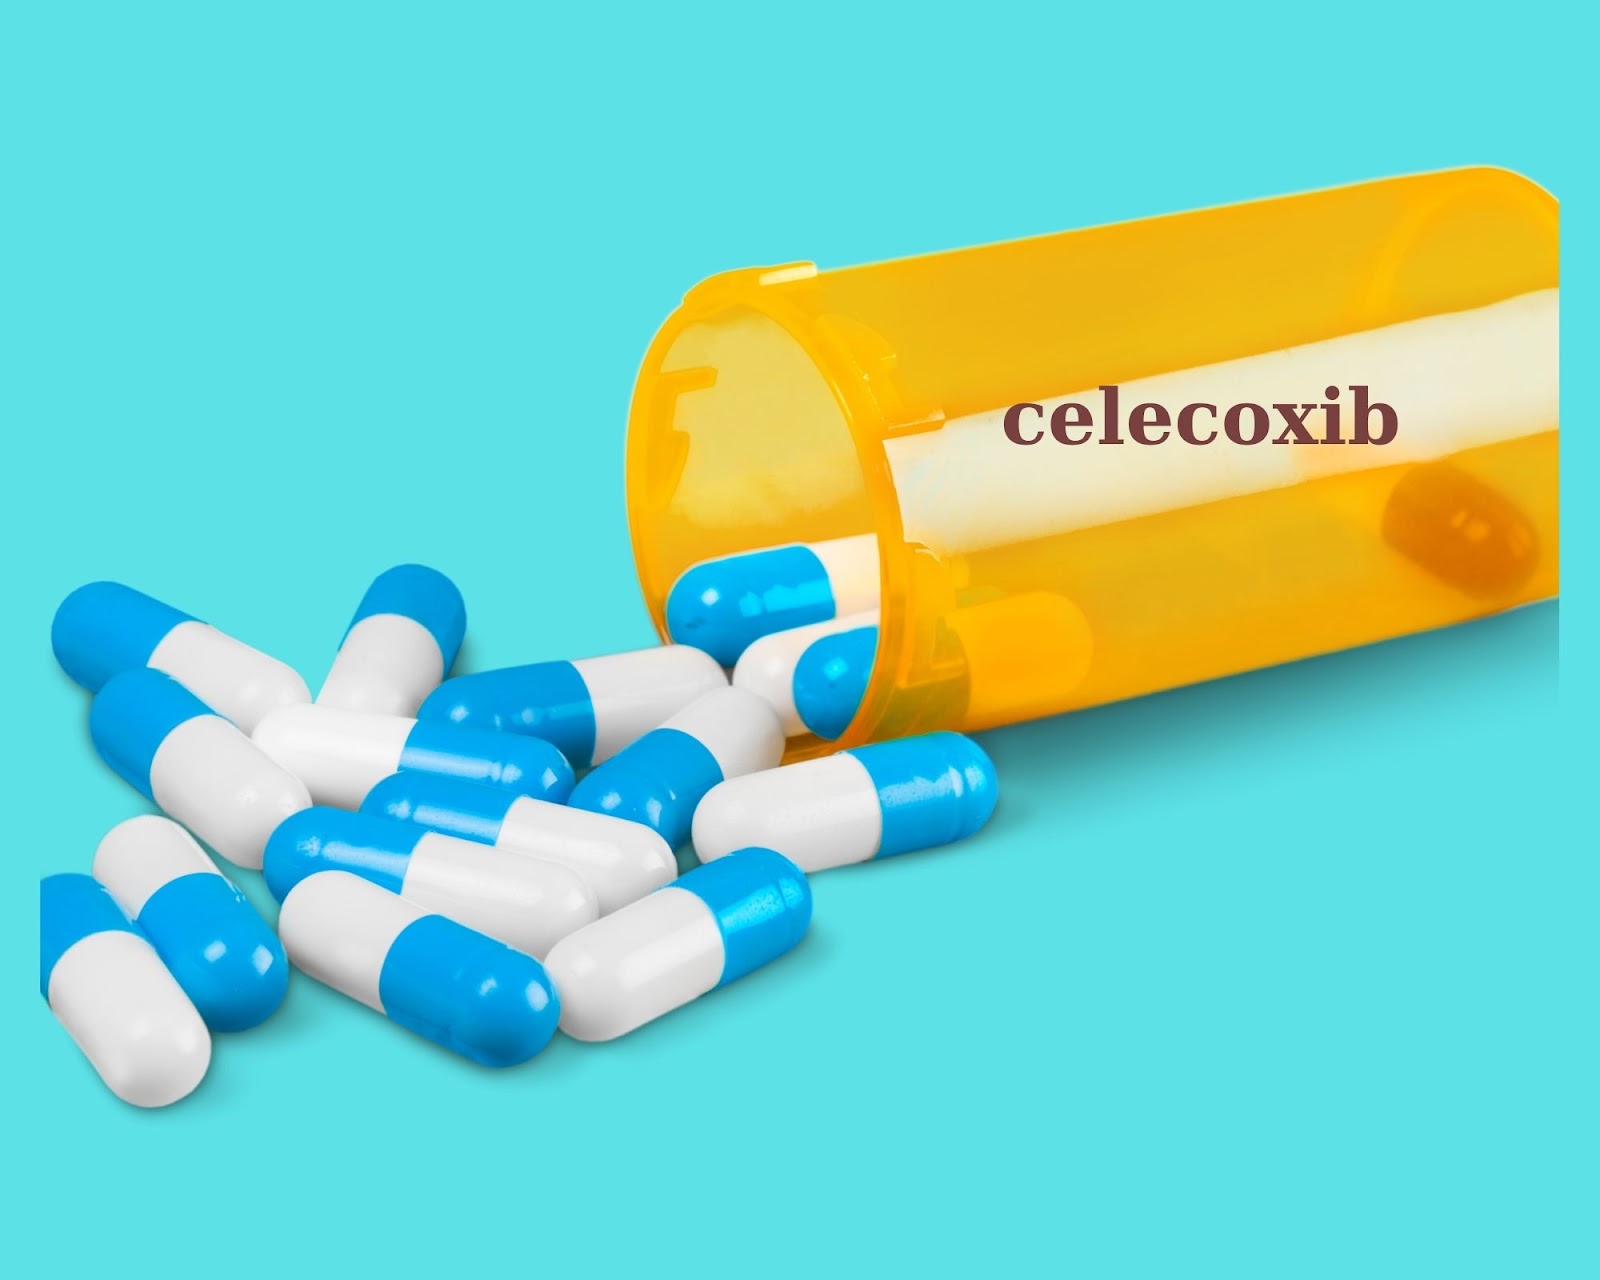 Thuốc Celecoxib gồm 2 hàm lượng là: Celecoxib 100mg và Celecoxib 200mg